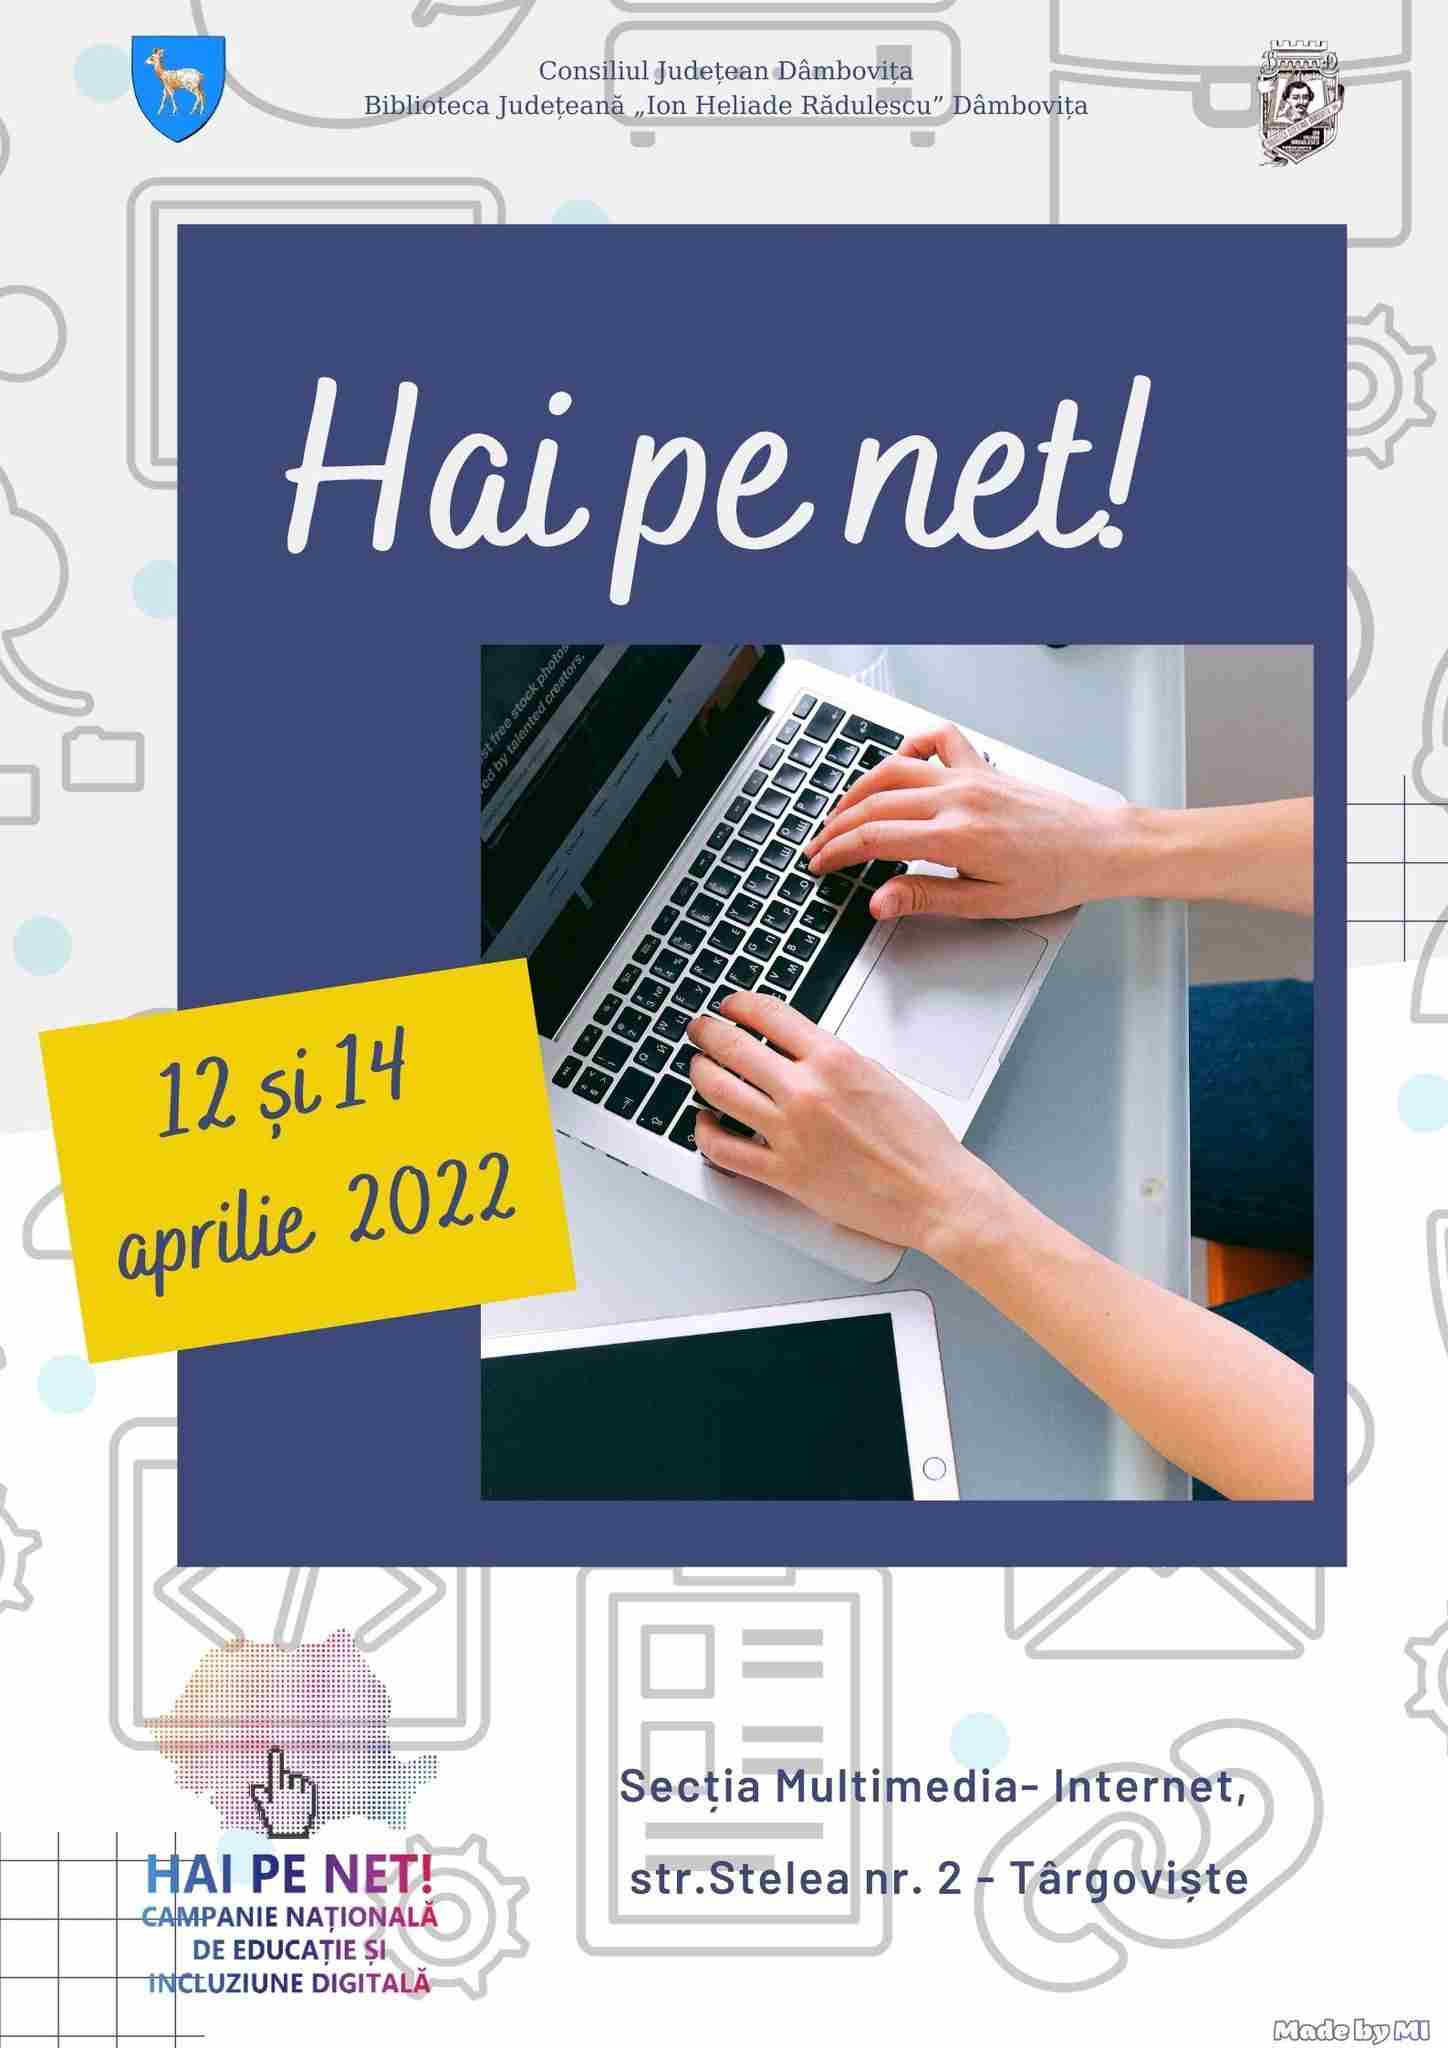  Campania Națională de Educație și Incluziune Digitală „HAI PE NET!”